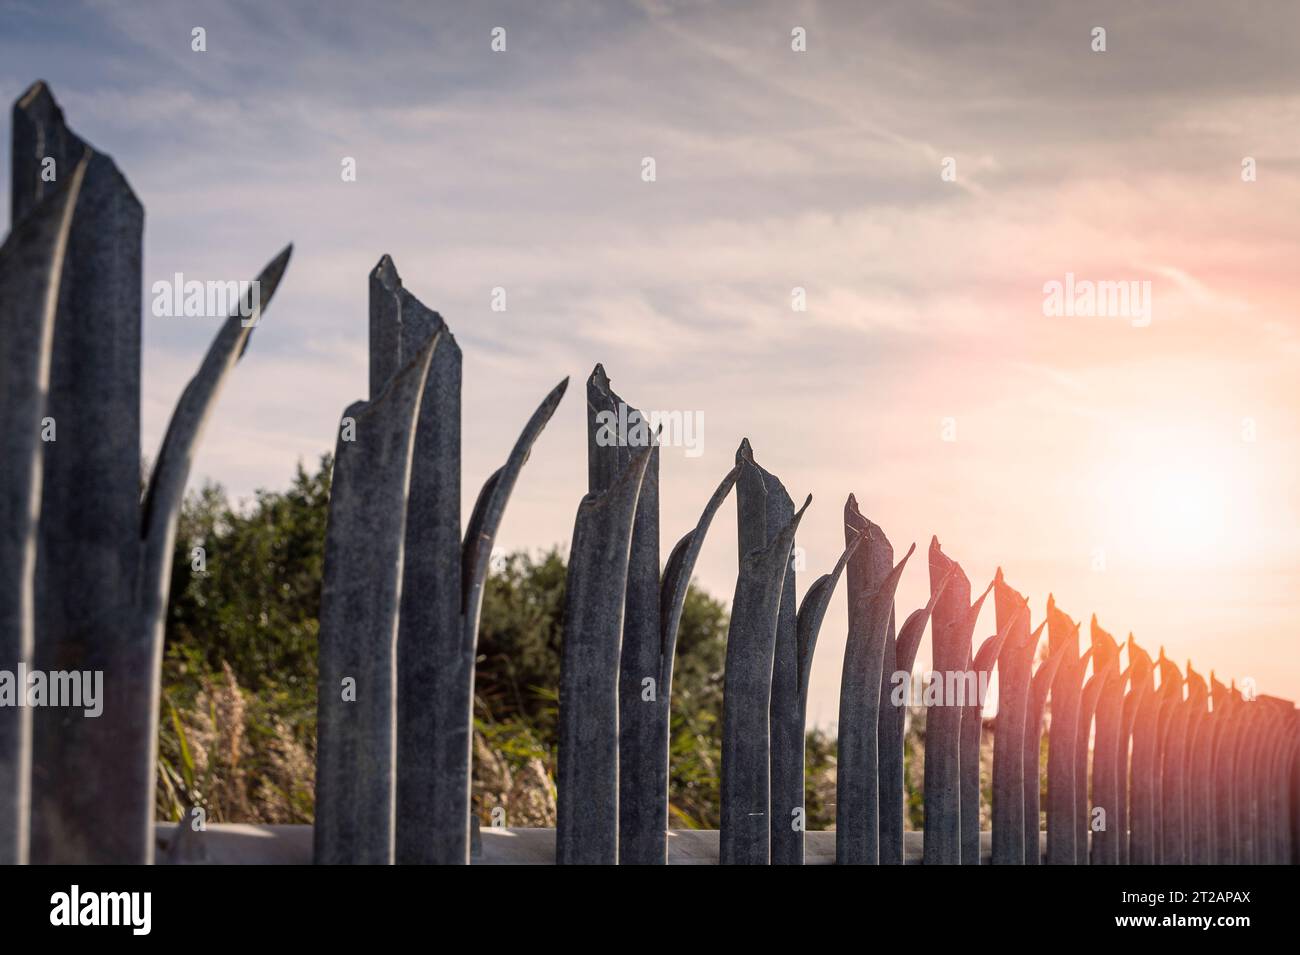 recinzione metallica con picchi, concetto di sicurezza. Foto Stock